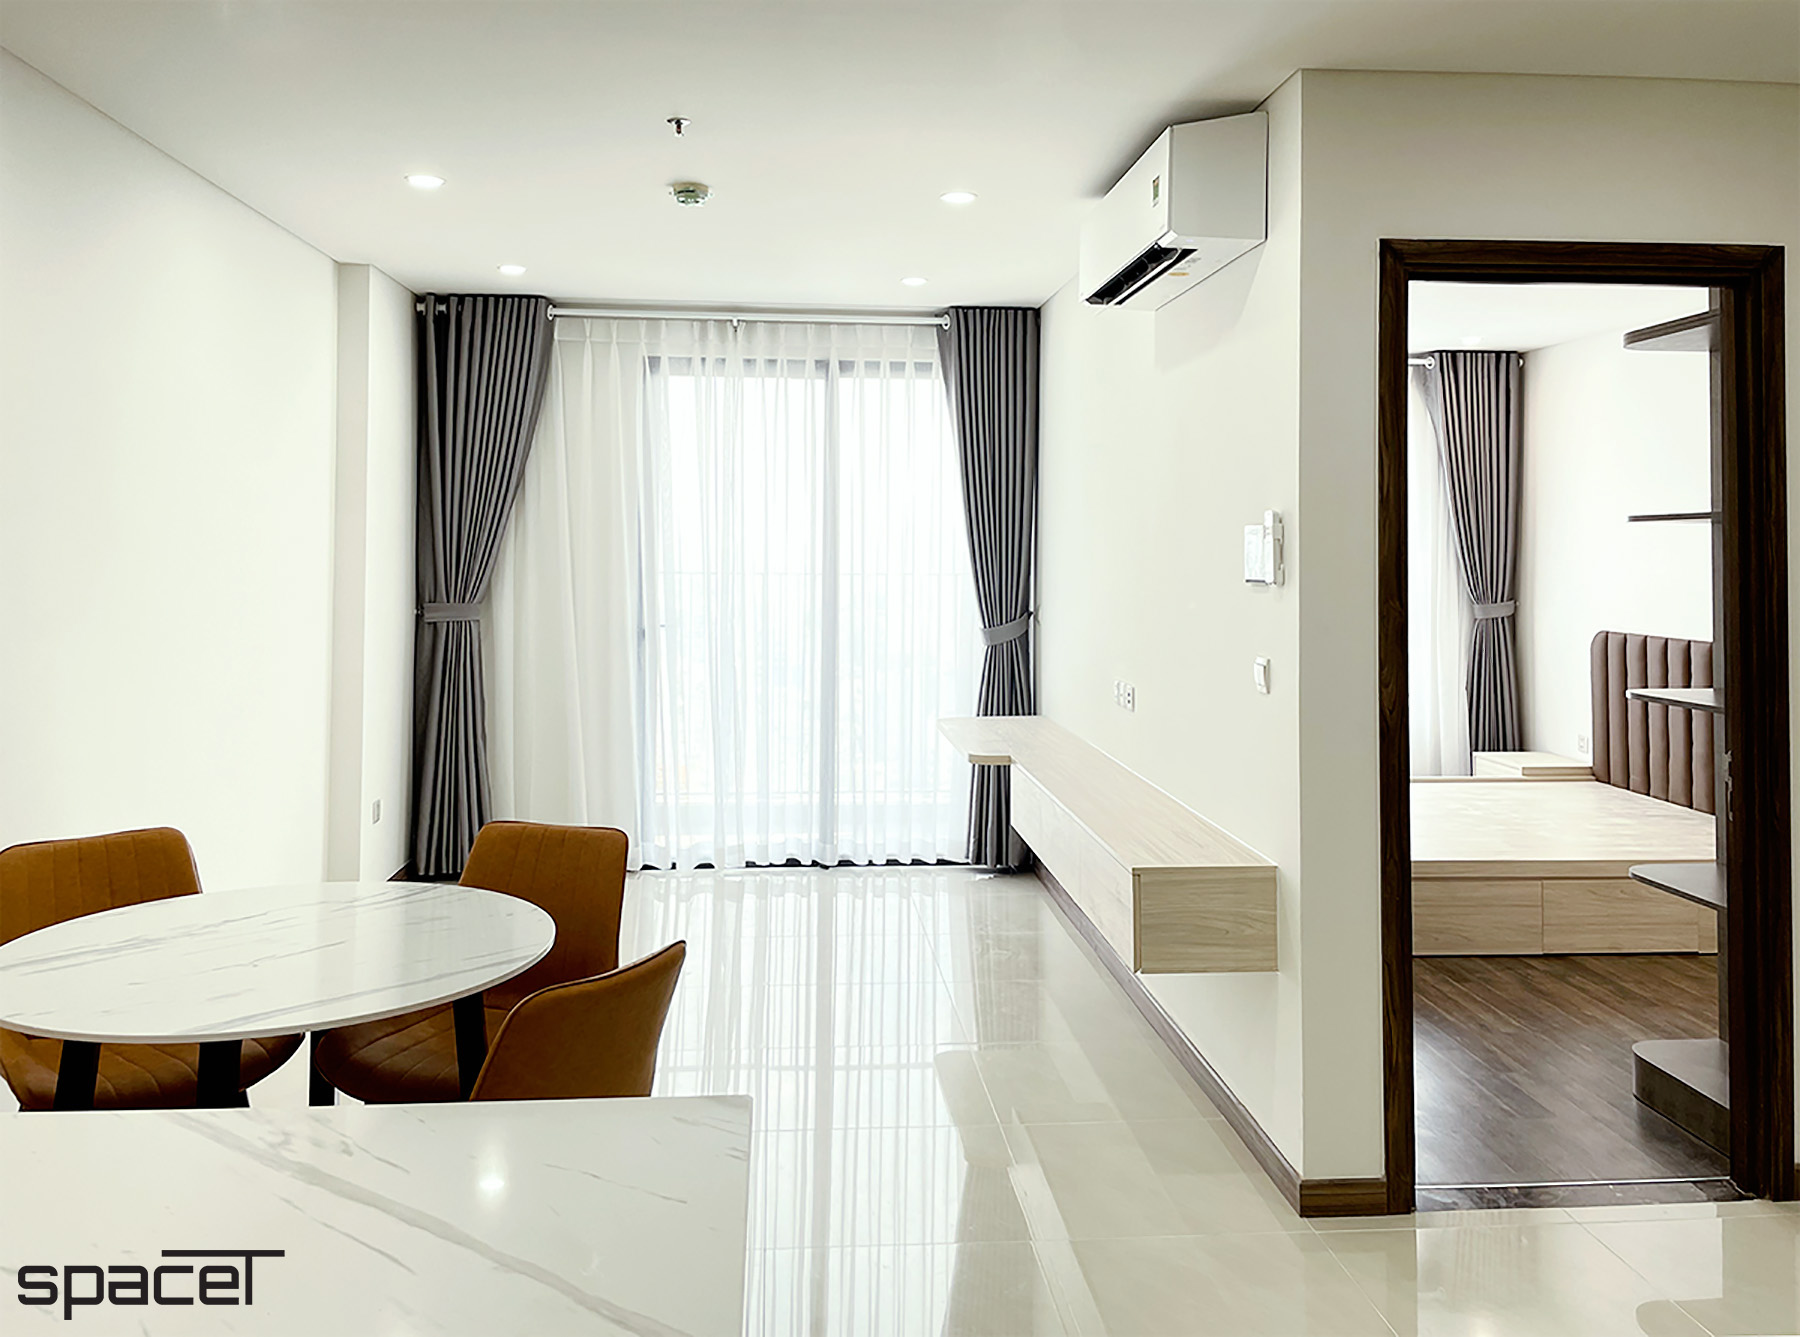 Phòng khách, phong cách Hiện đại Modern, hoàn thiện nội thất, căn hộ Iris 4 Hà Đô Centrosa Garden